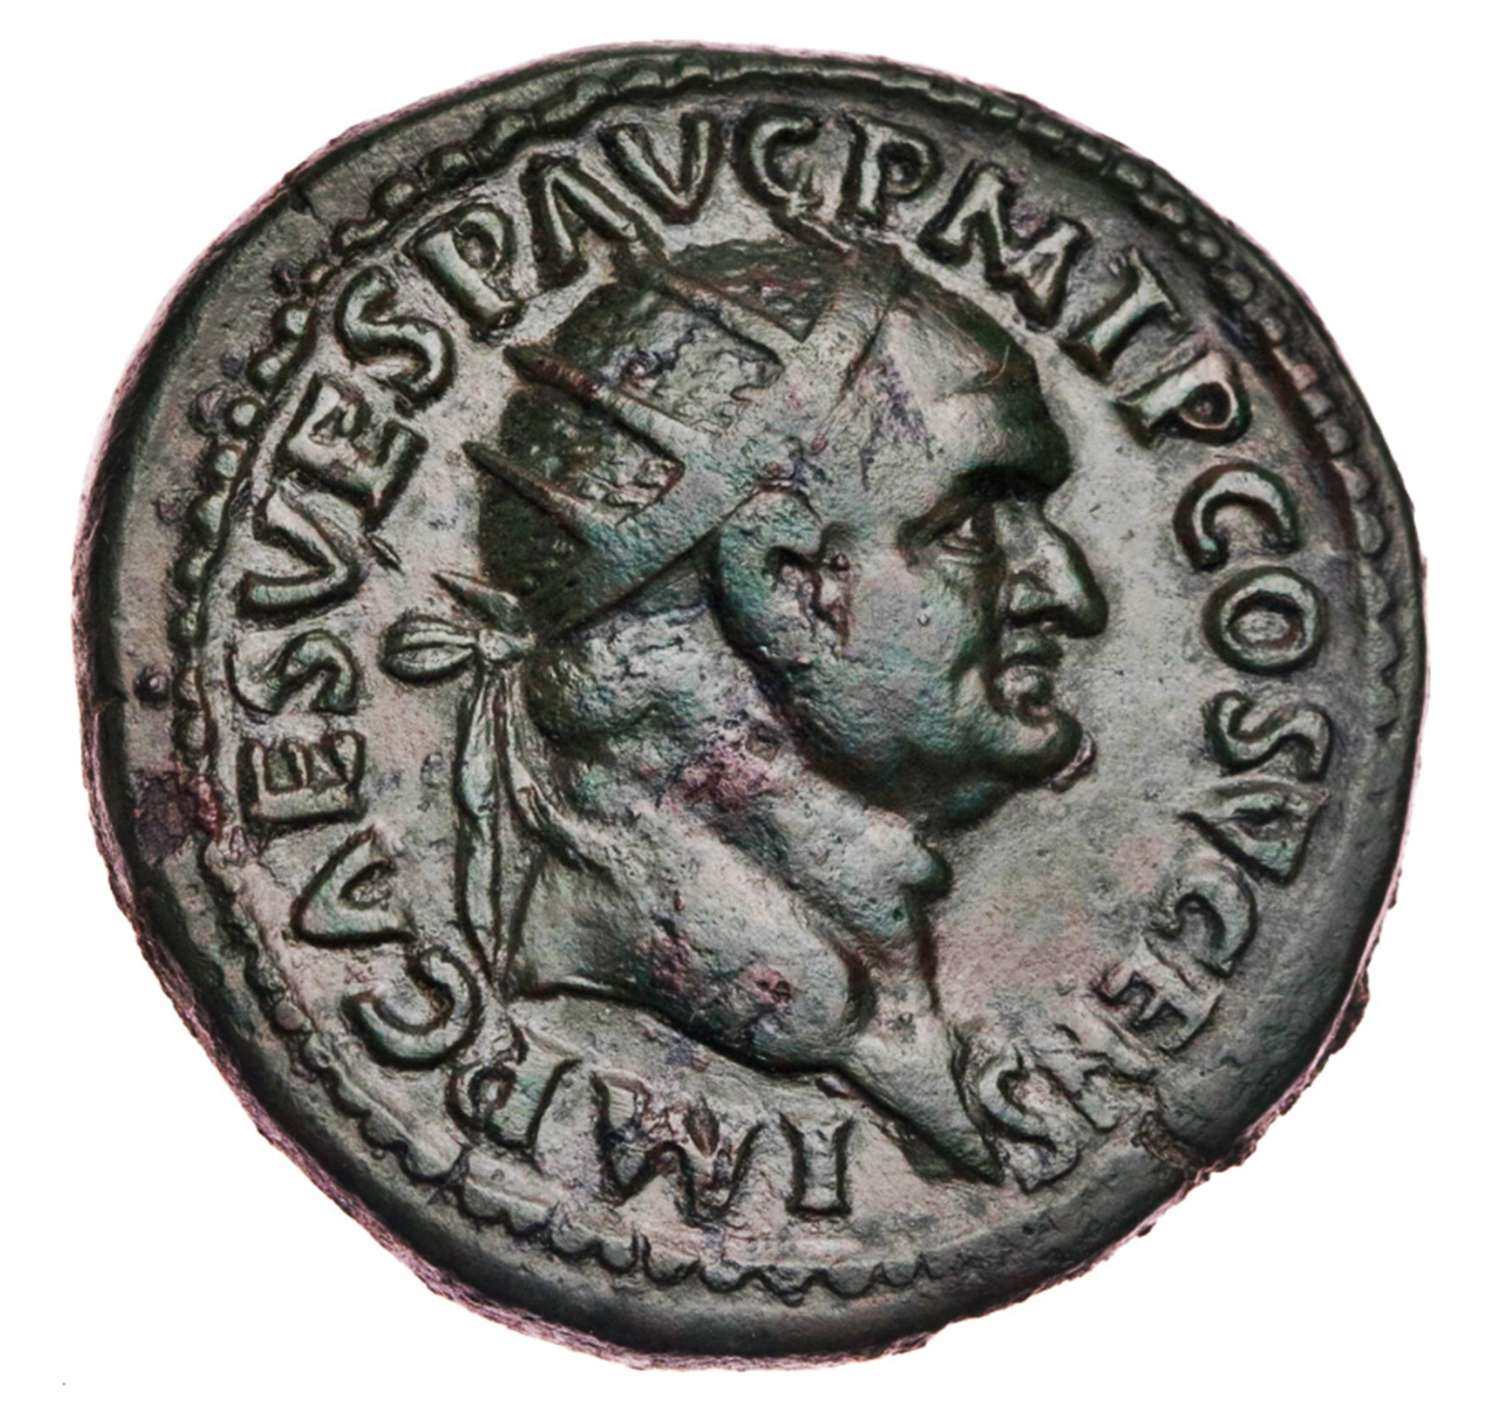 Ancient Roman AE Dupondius of Emperor Vespasian / Good fortune